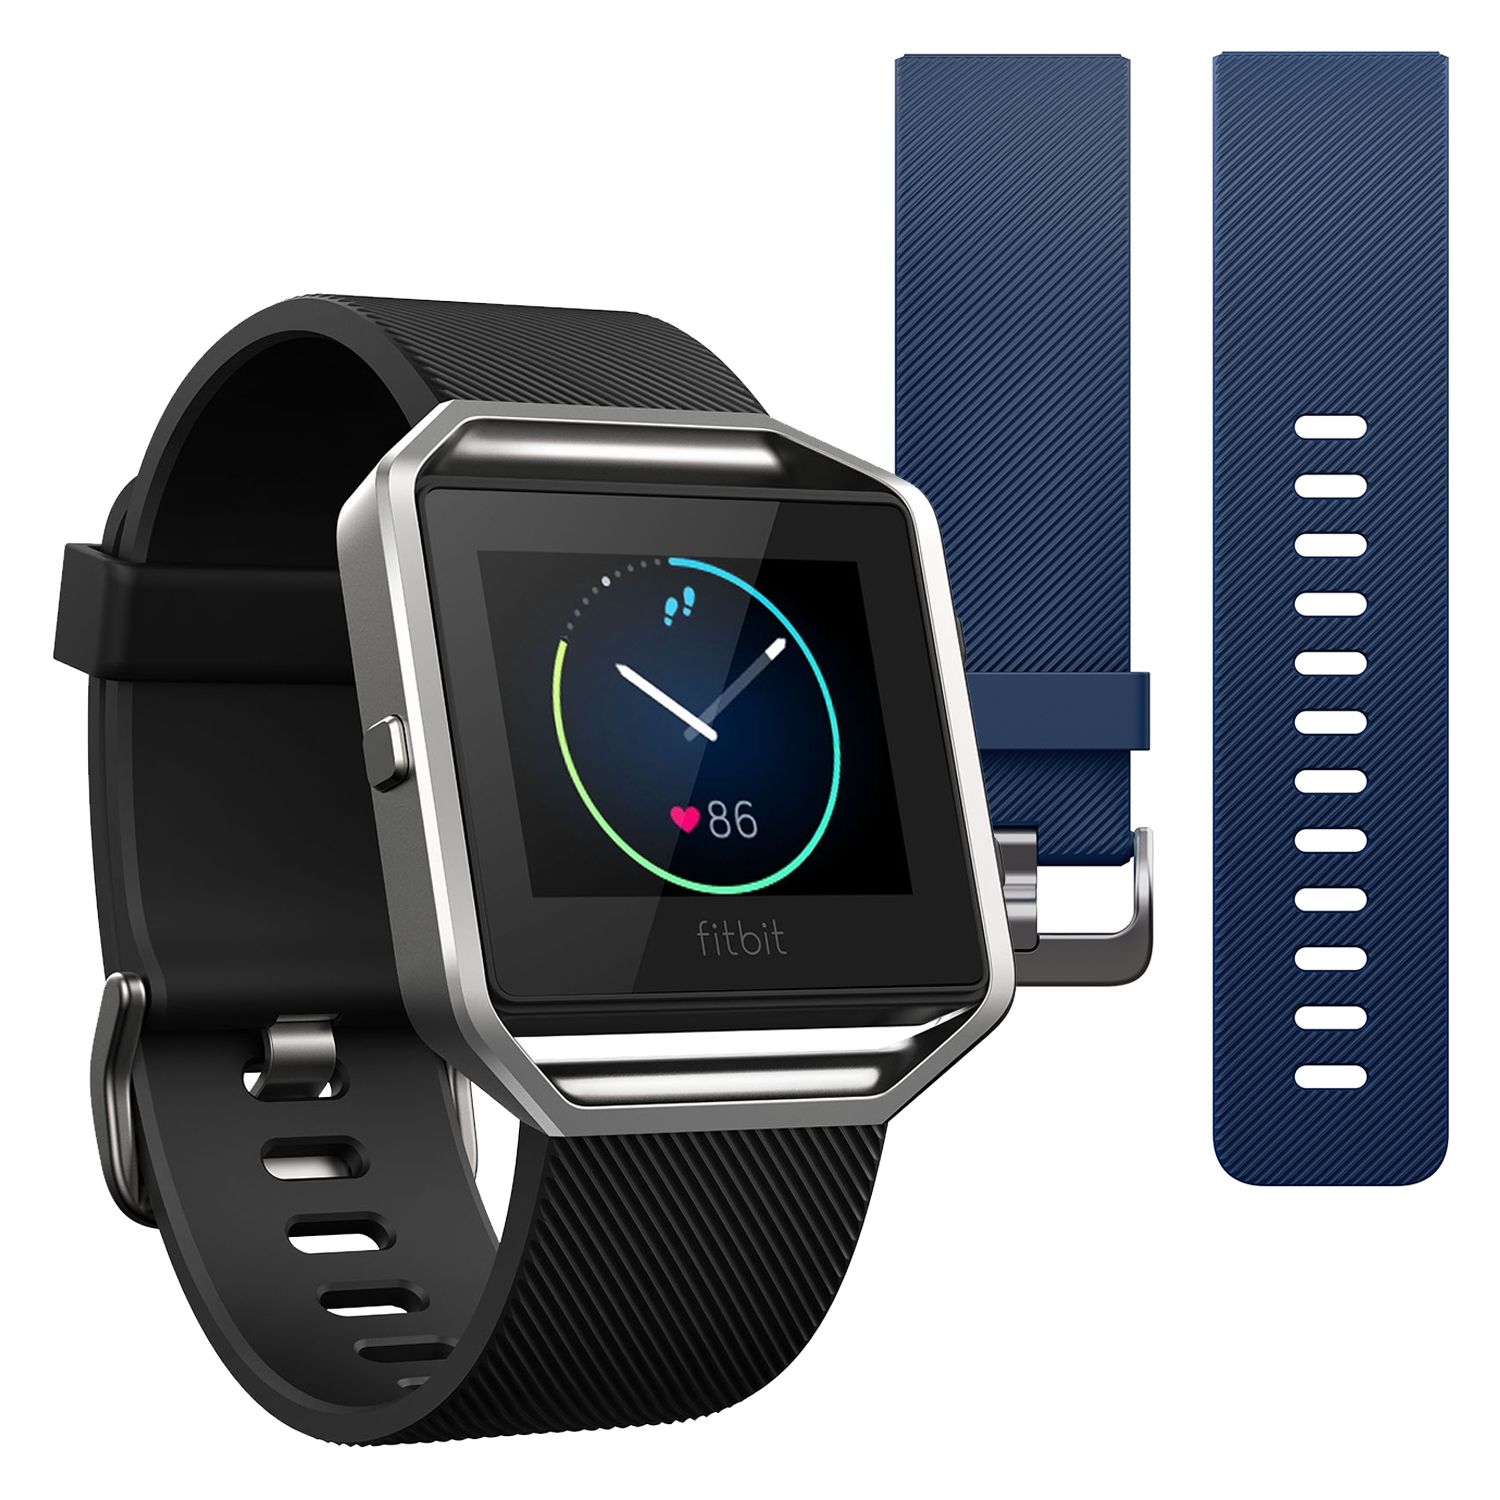 fitbit smart fitness watch